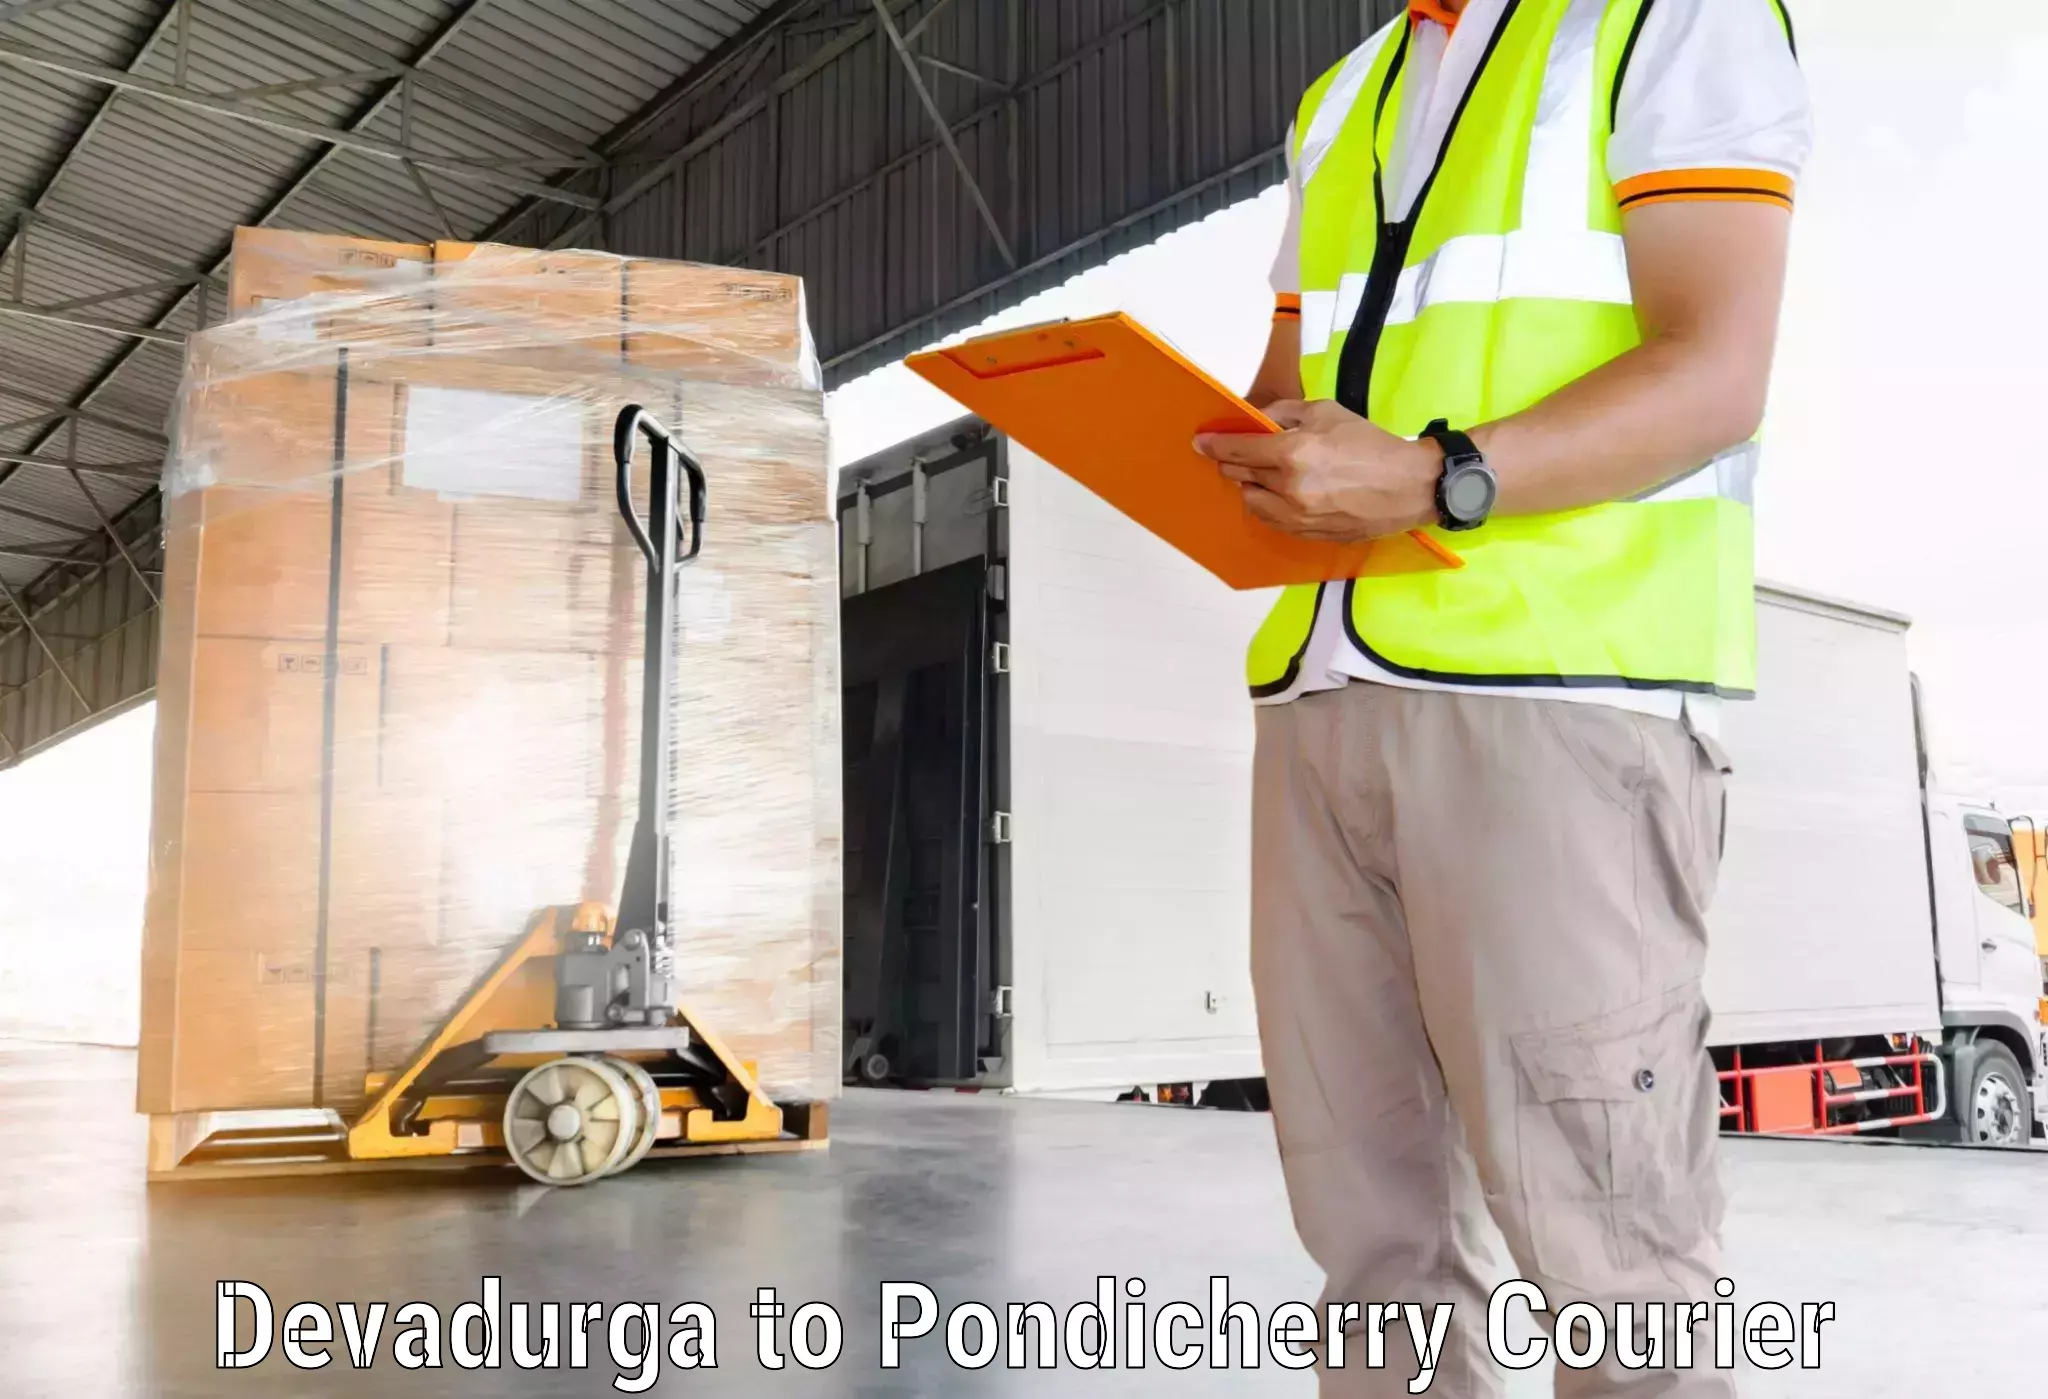 Customer-friendly courier services in Devadurga to Pondicherry